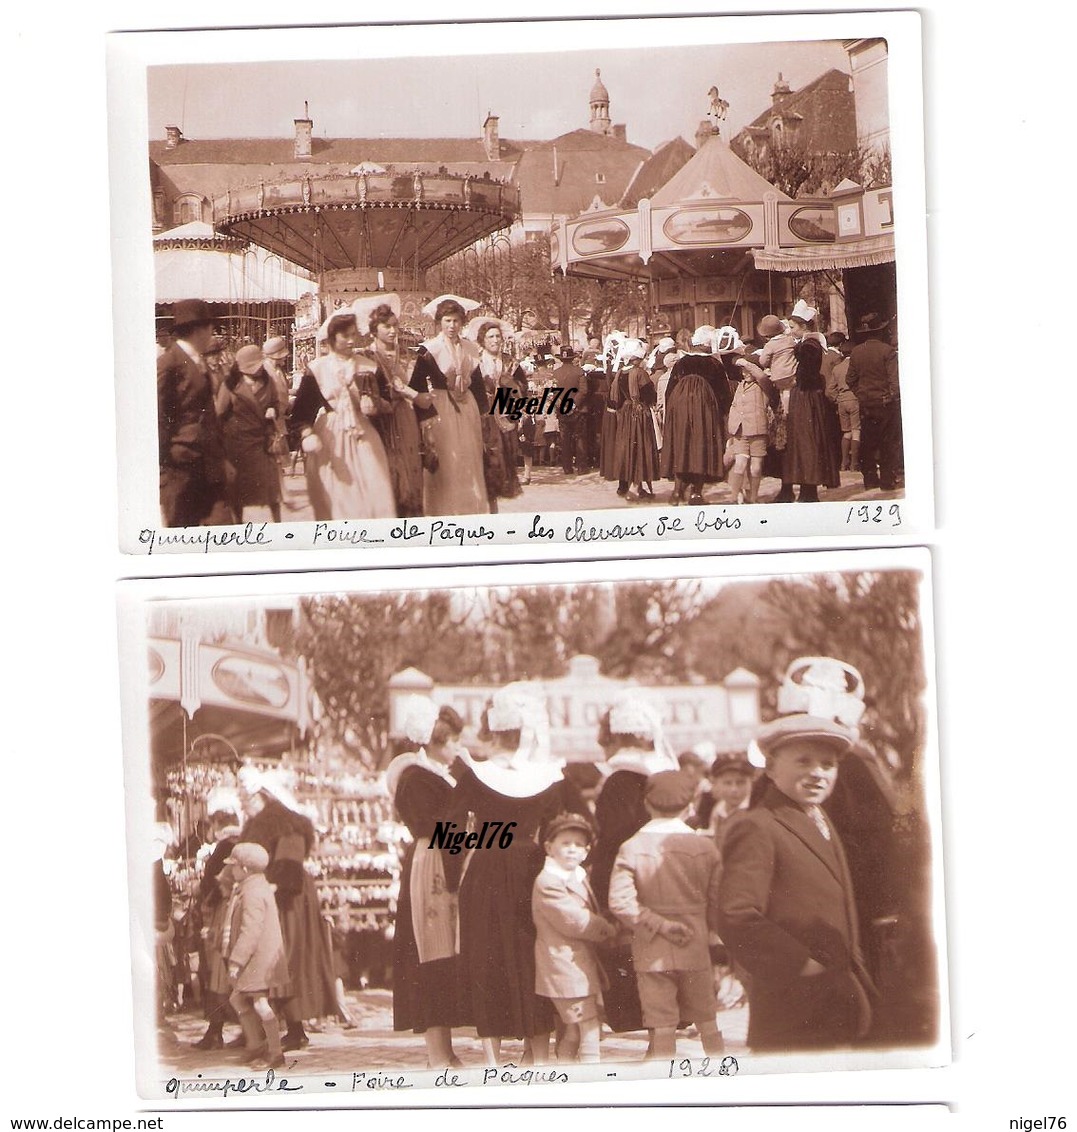 2 Photos Originales BRETAGNE FINISTERE 1929 Quimperlé Foire De Pâques Manèges Folklore Fête Foraine - Lieux